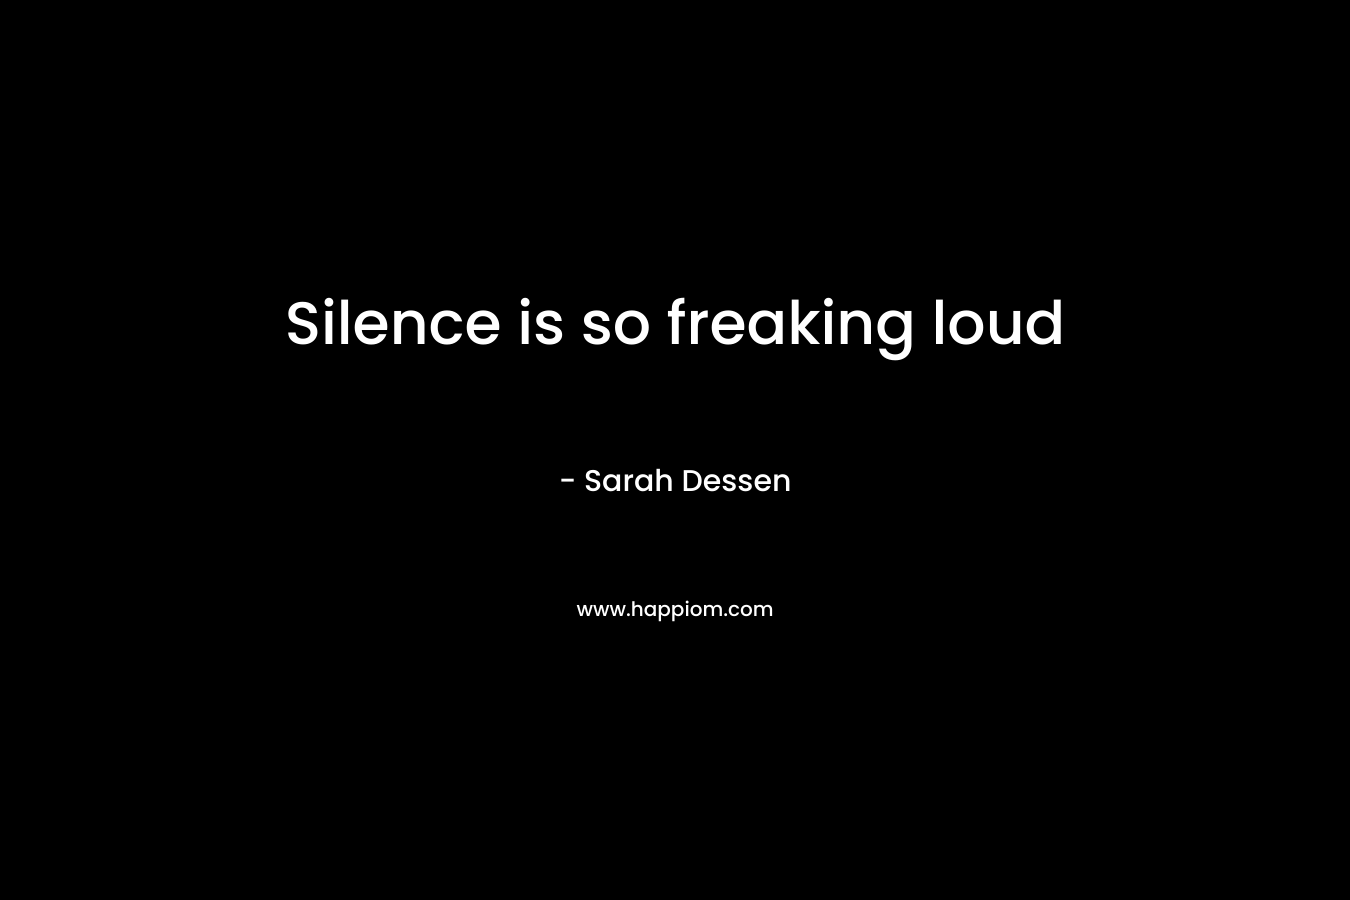 Silence is so freaking loud